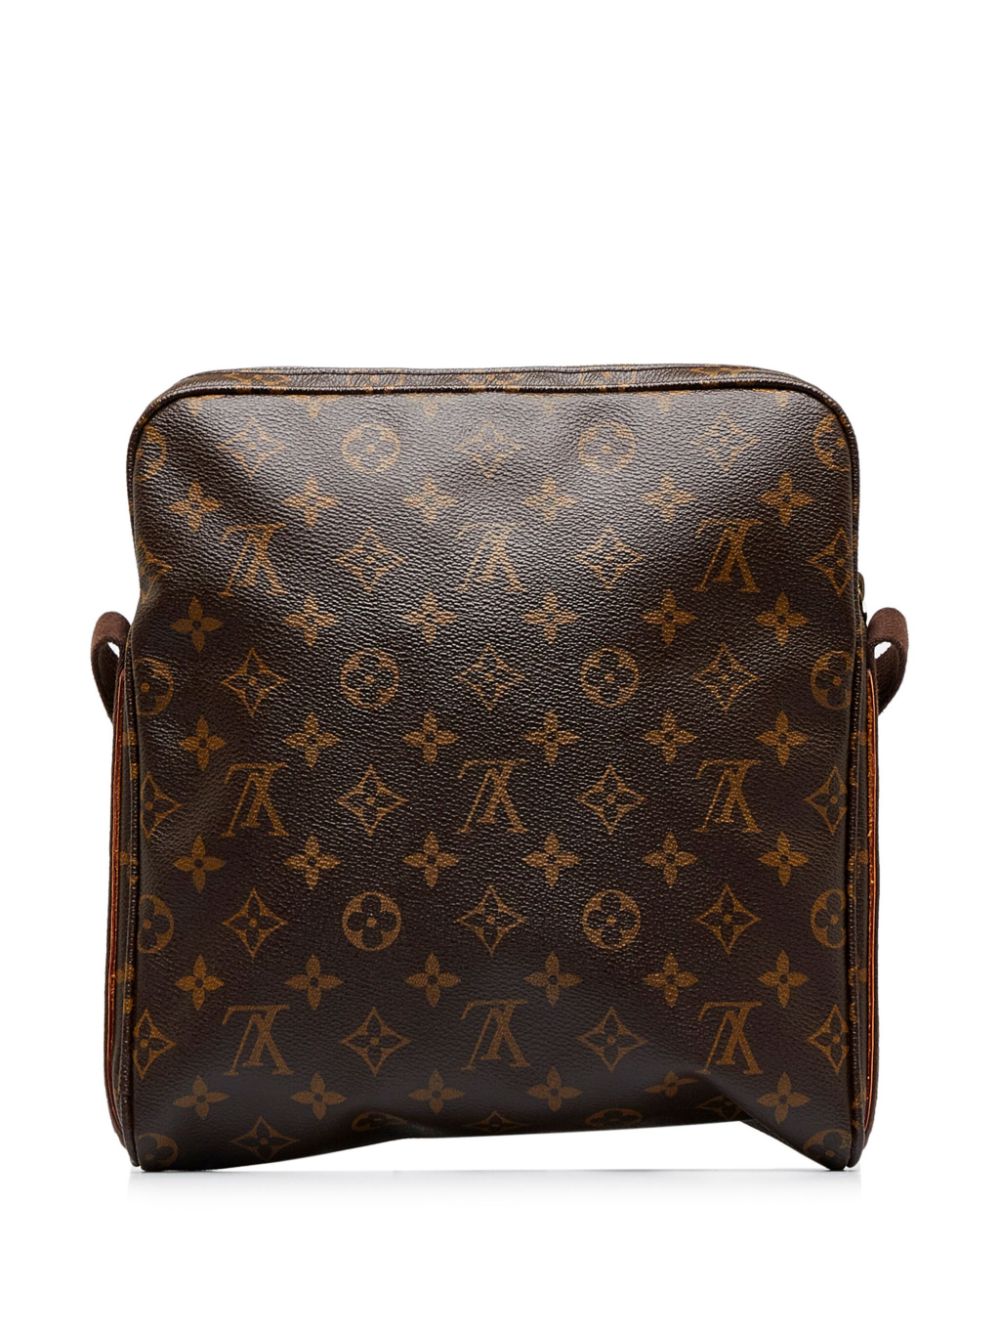 Louis Vuitton Trotteur Beaubourg Handbag Monogram Canvas at